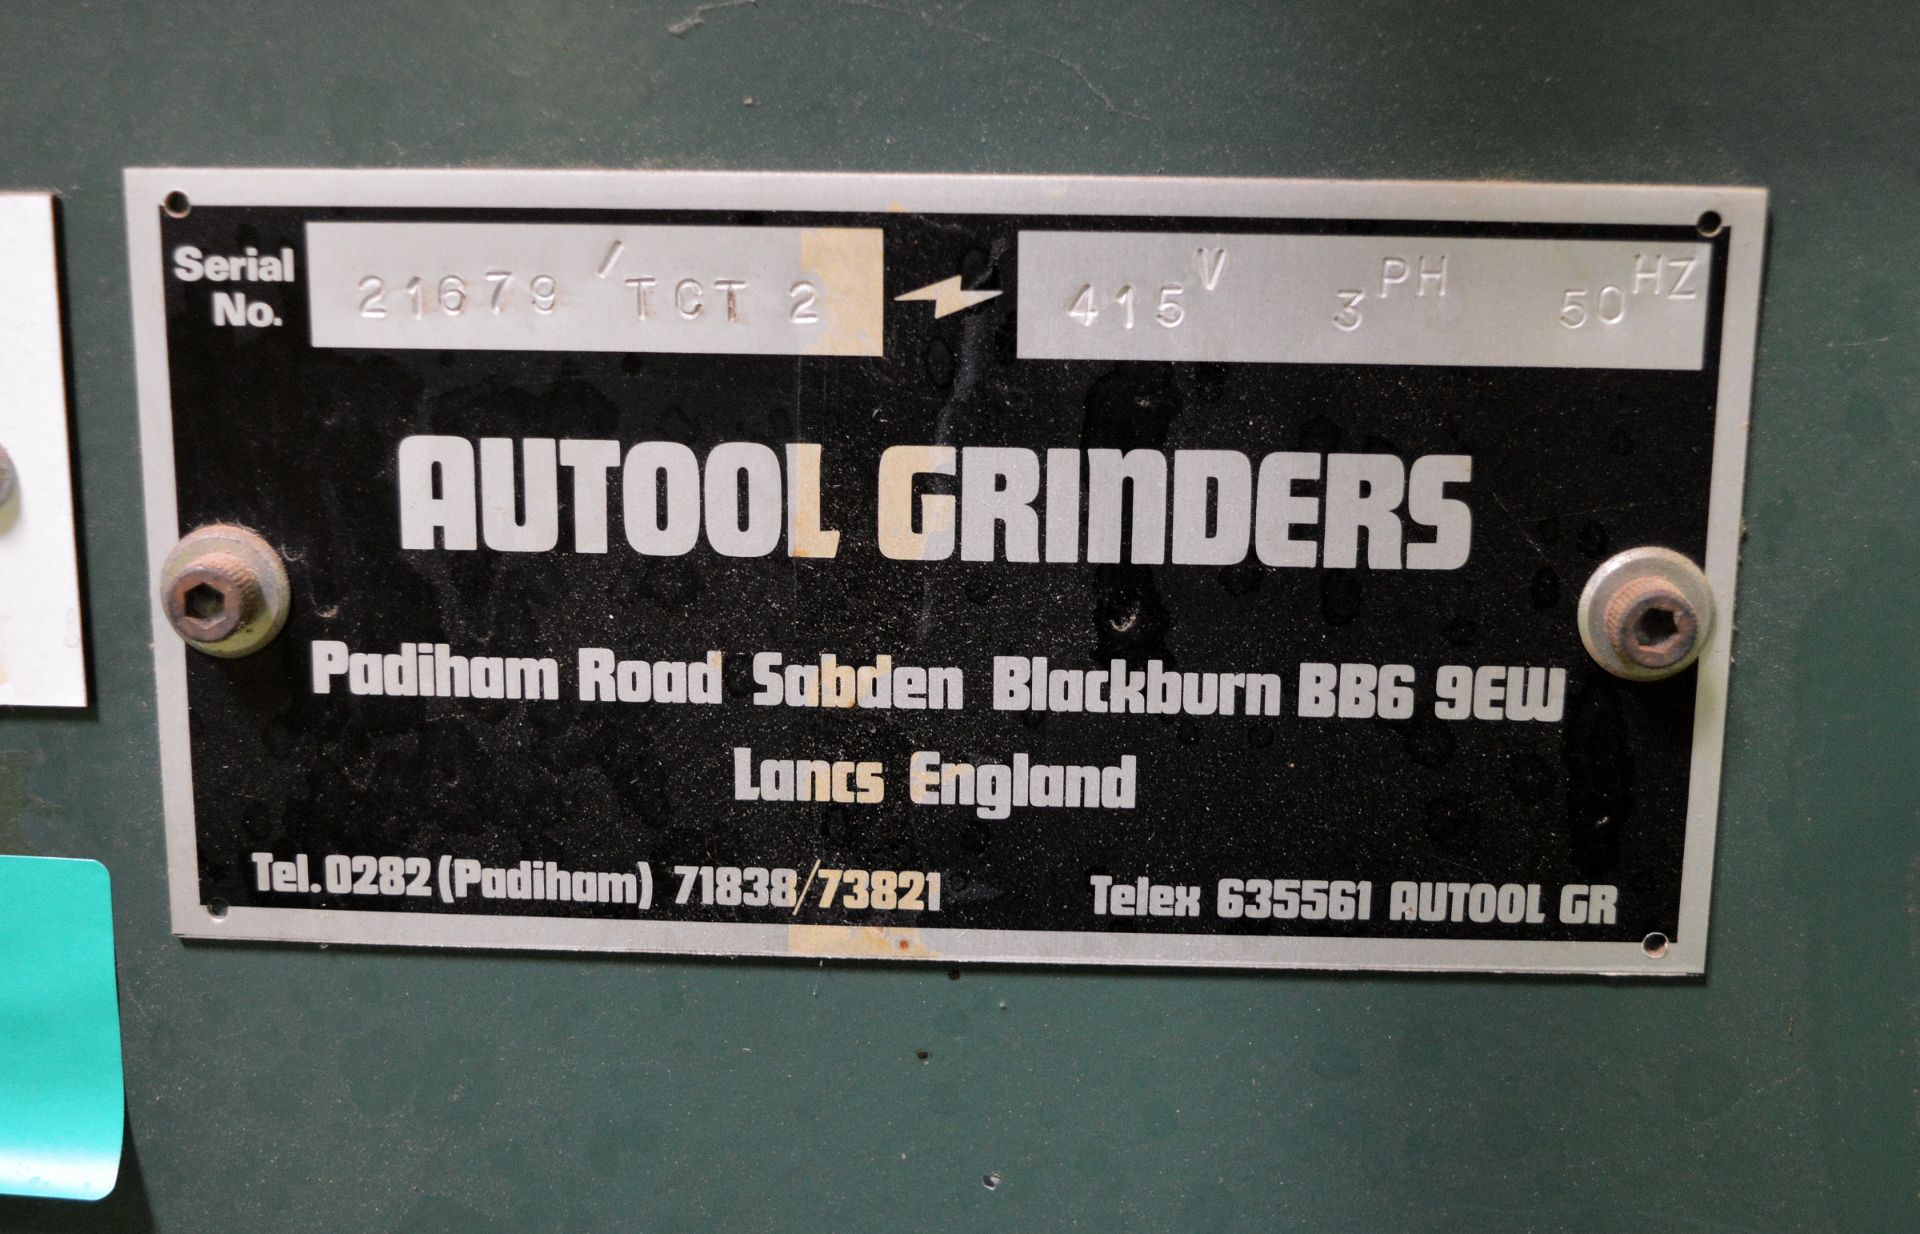 Autool Grinders 21679TOT2 Grinder - 415V - 3 Phase - 50hz grinder - L770 x W660 x H1300mm - Image 6 of 6